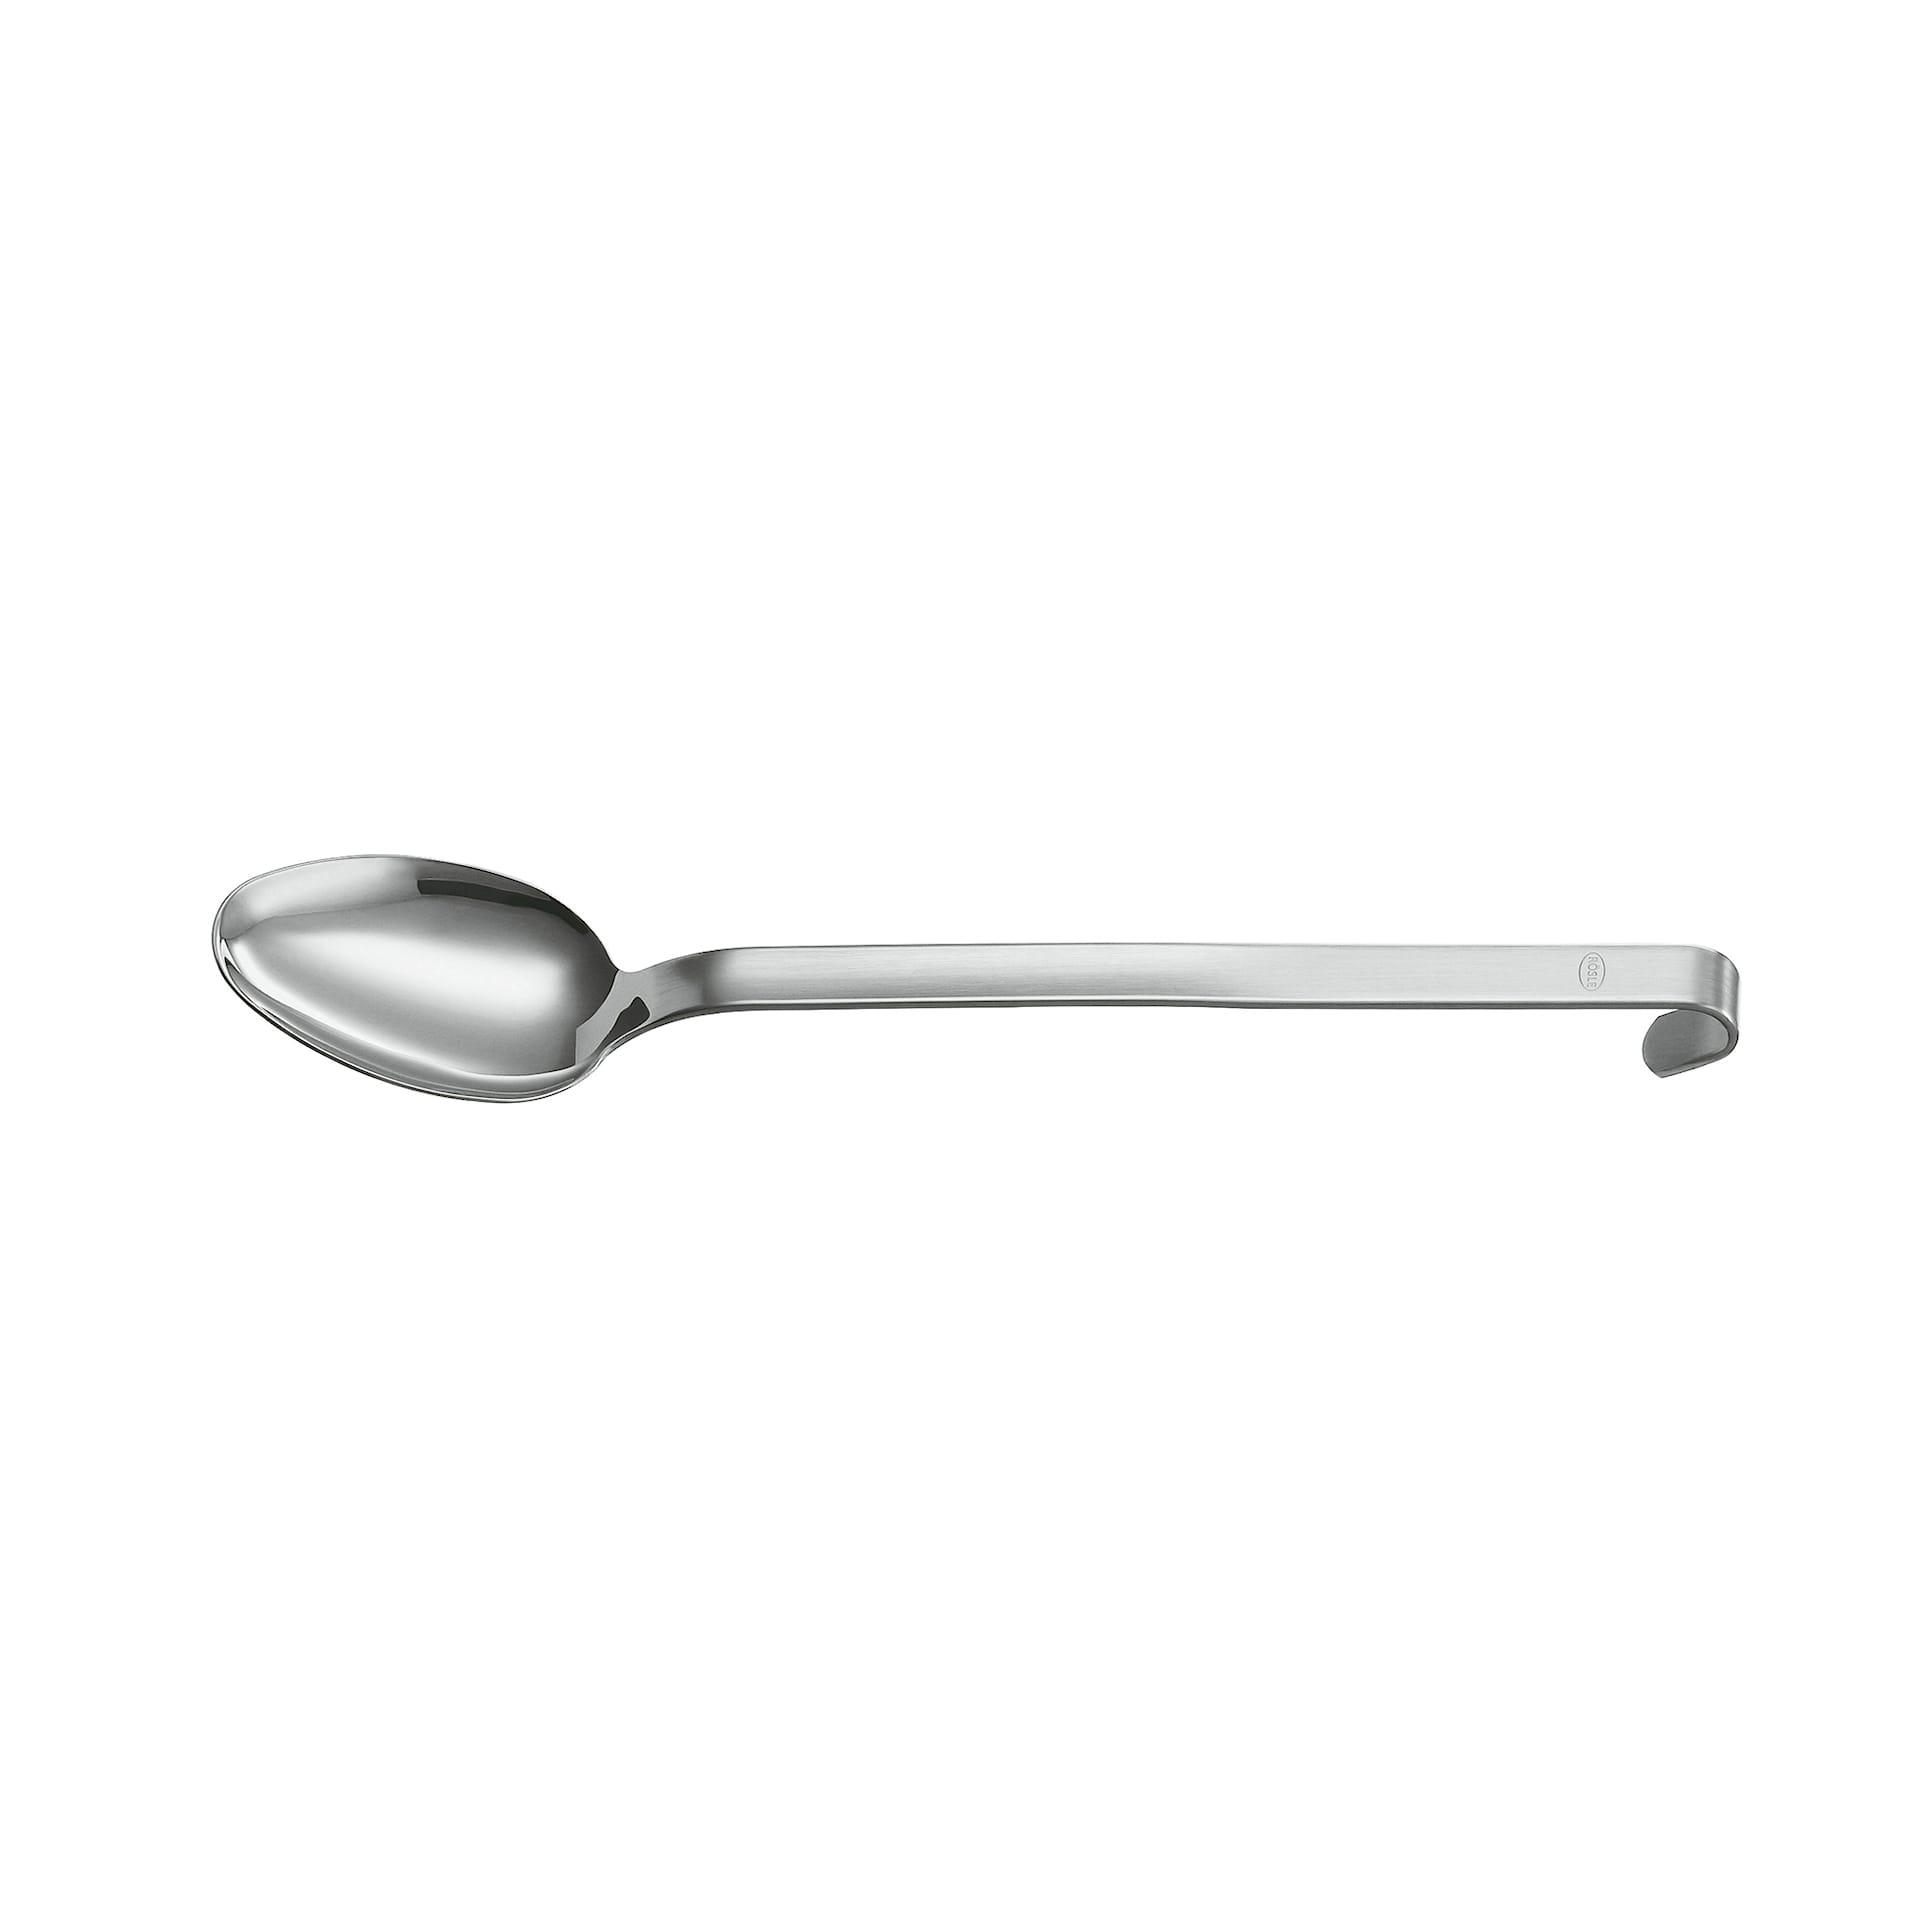 Spoon/Mixer Spoon Hook - 31.5 cm - Rösle - NO GA